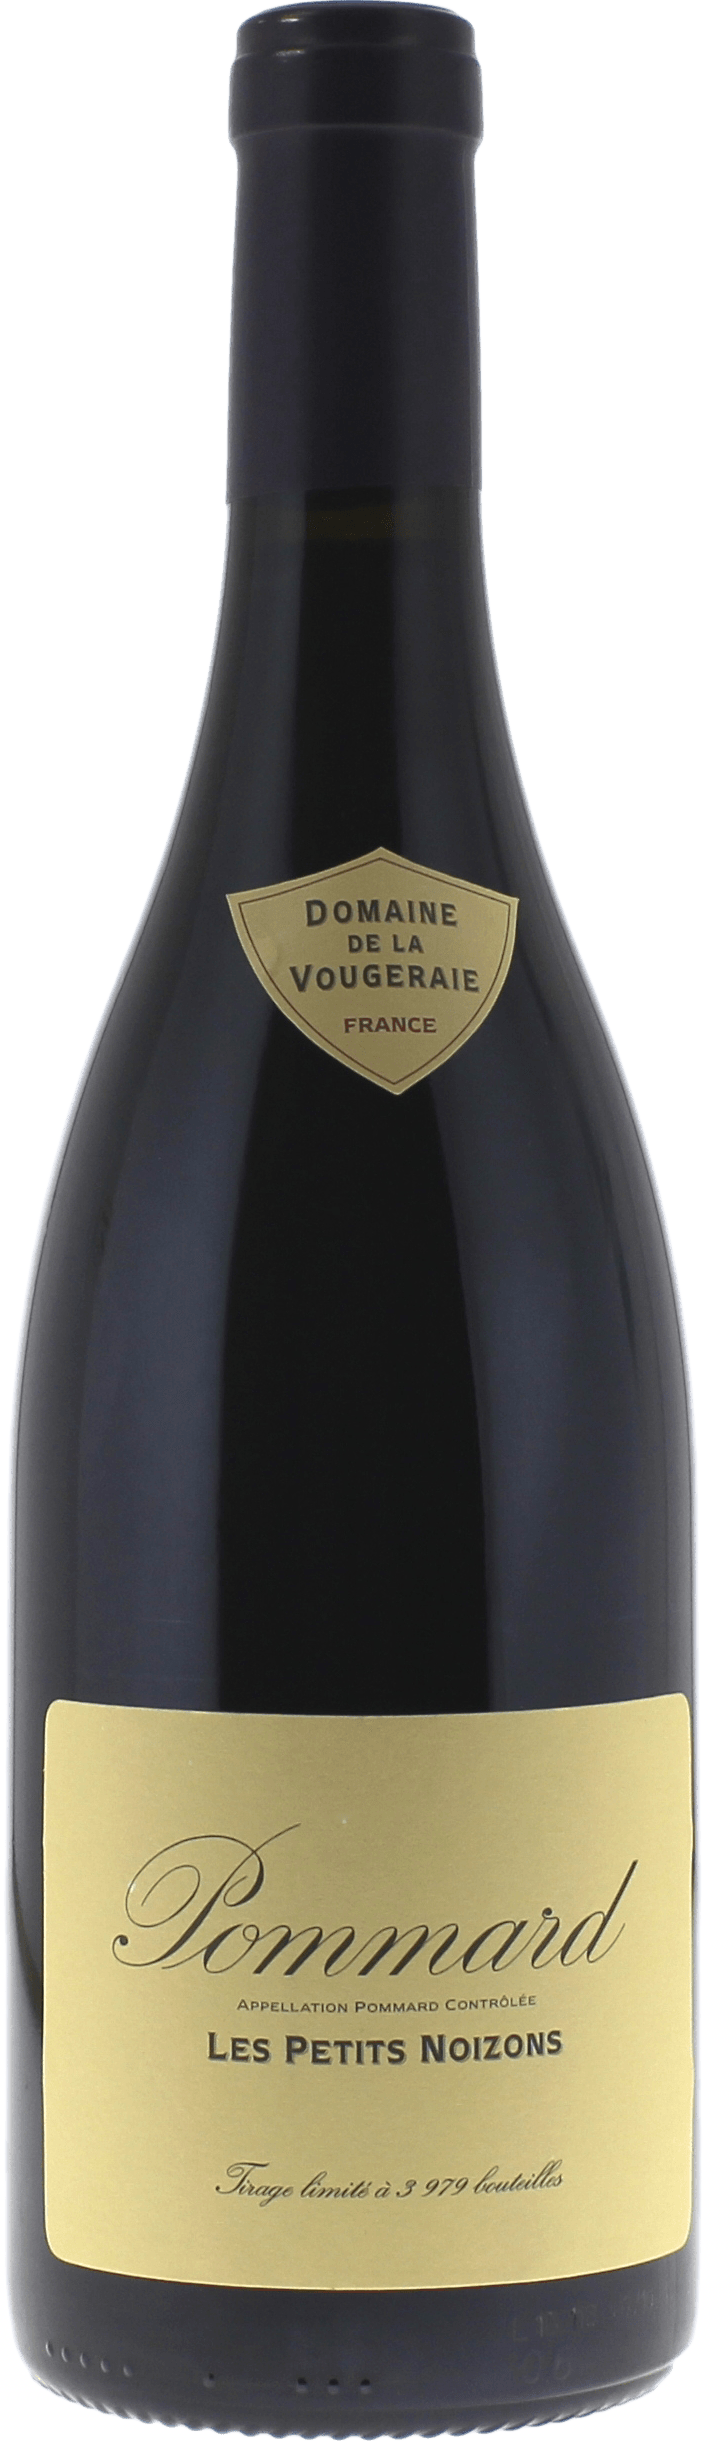 Pommard les petits noizons 2017 Domaine VOUGERAIE, Bourgogne rouge